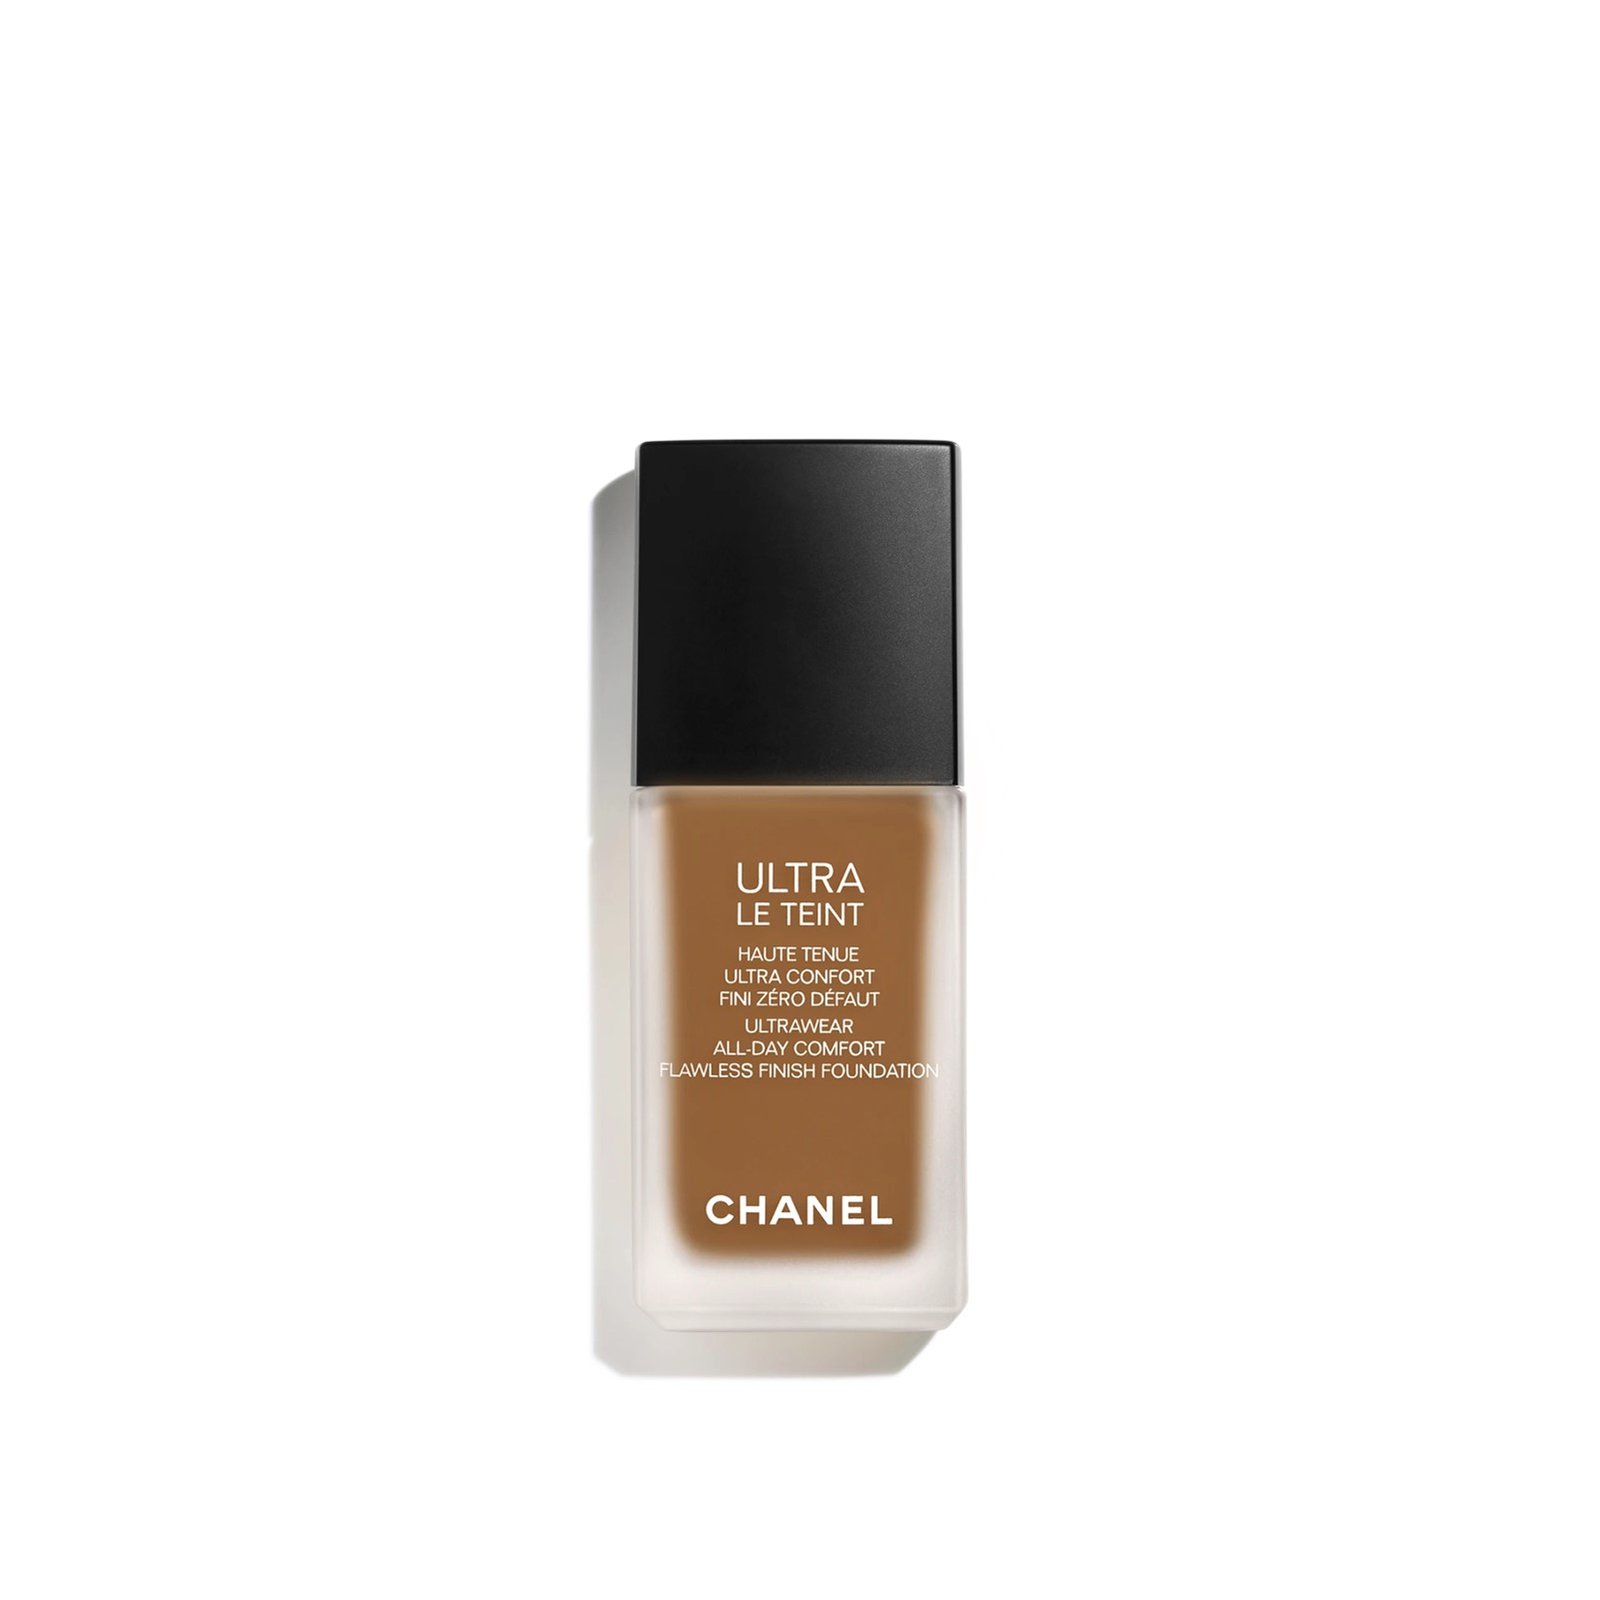 CHANEL Ultra Le Teint Flawless Finish Foundation B140 30ml (1.0 fl oz)